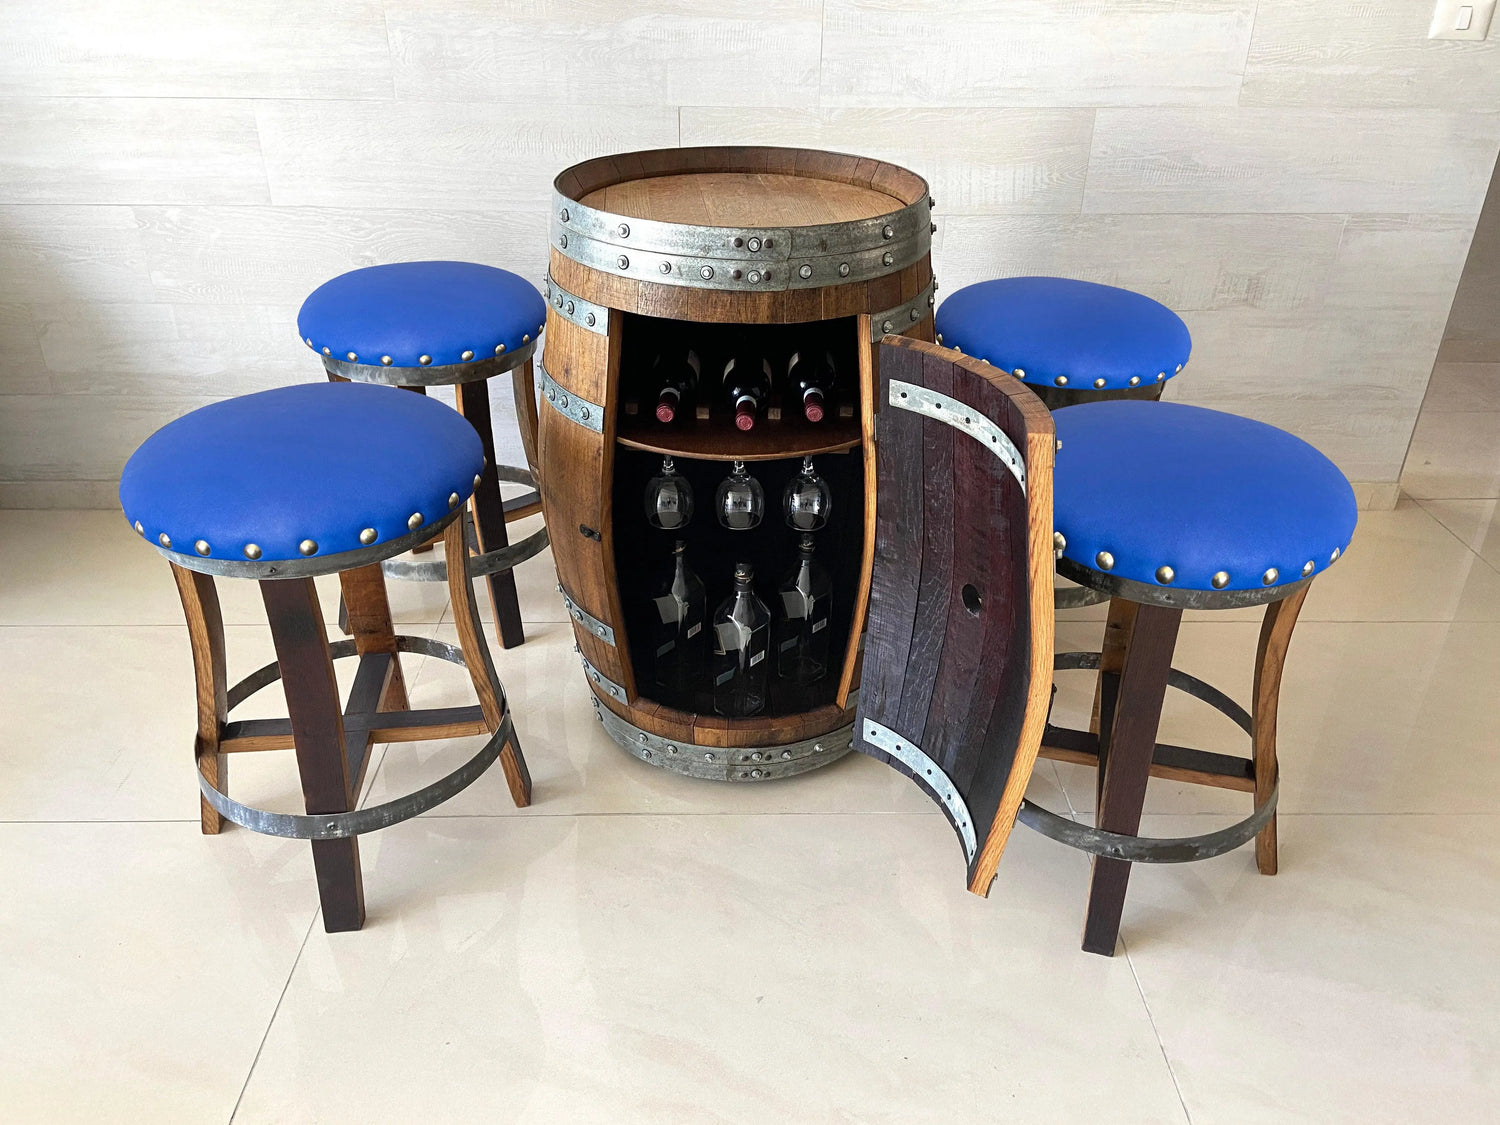 Why you should wirebrush oak wine barrels and release the beautiful grain pattern inside? - Oak Wood Wine Barrels